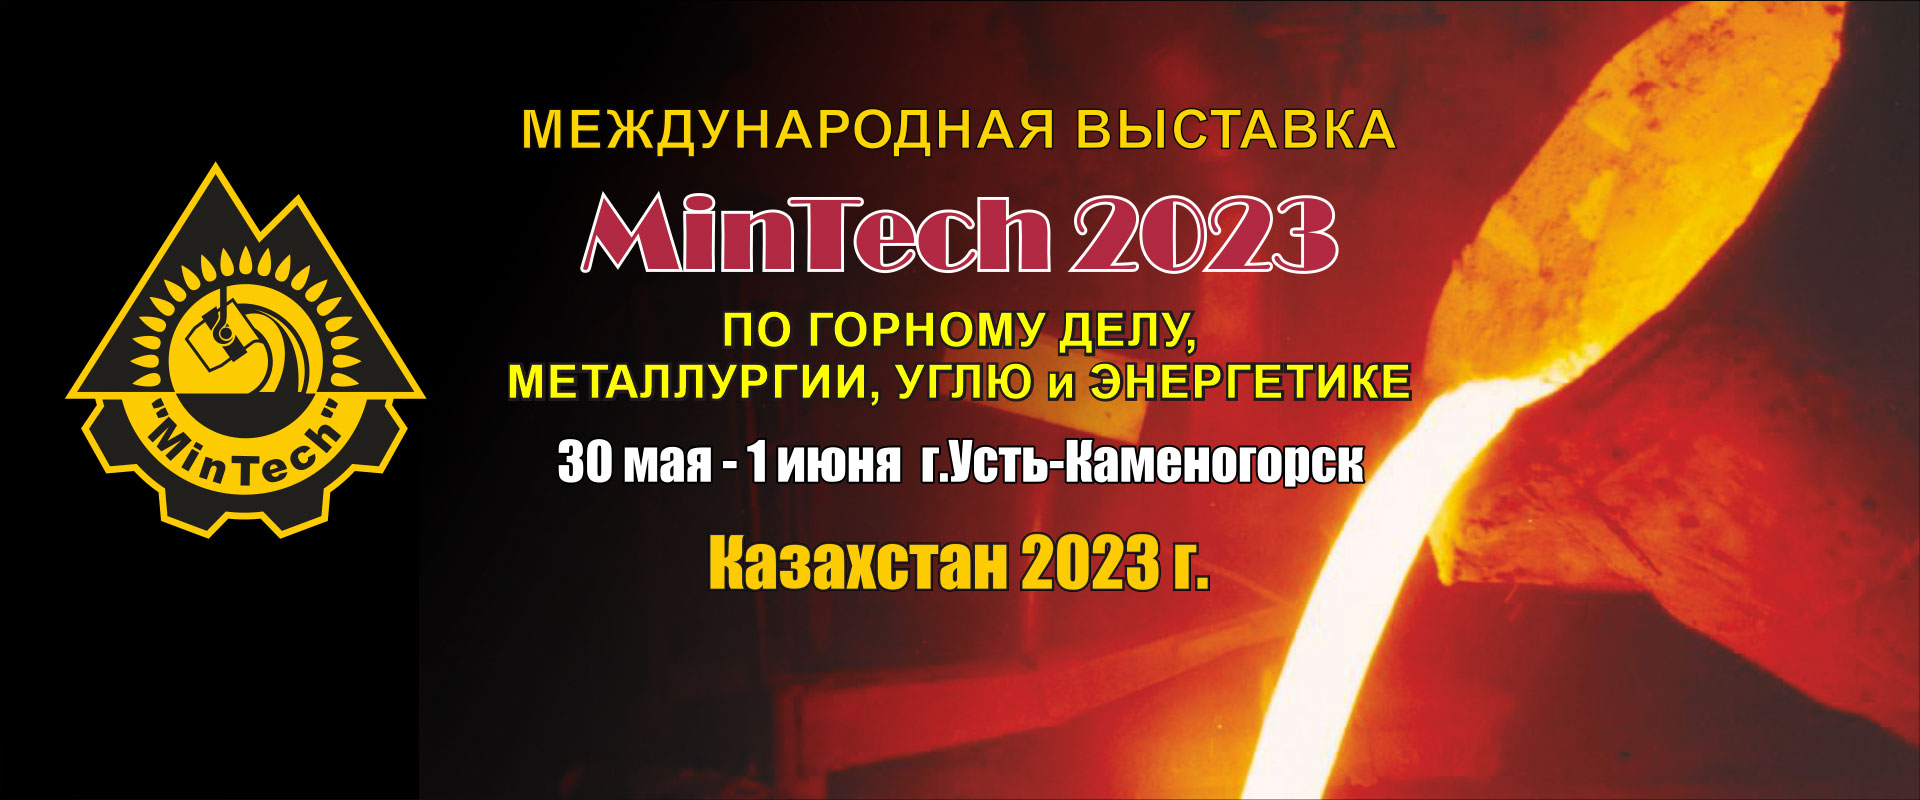 MinTech Усть-Каменогорск 2023 промышленная выставка Казахстан